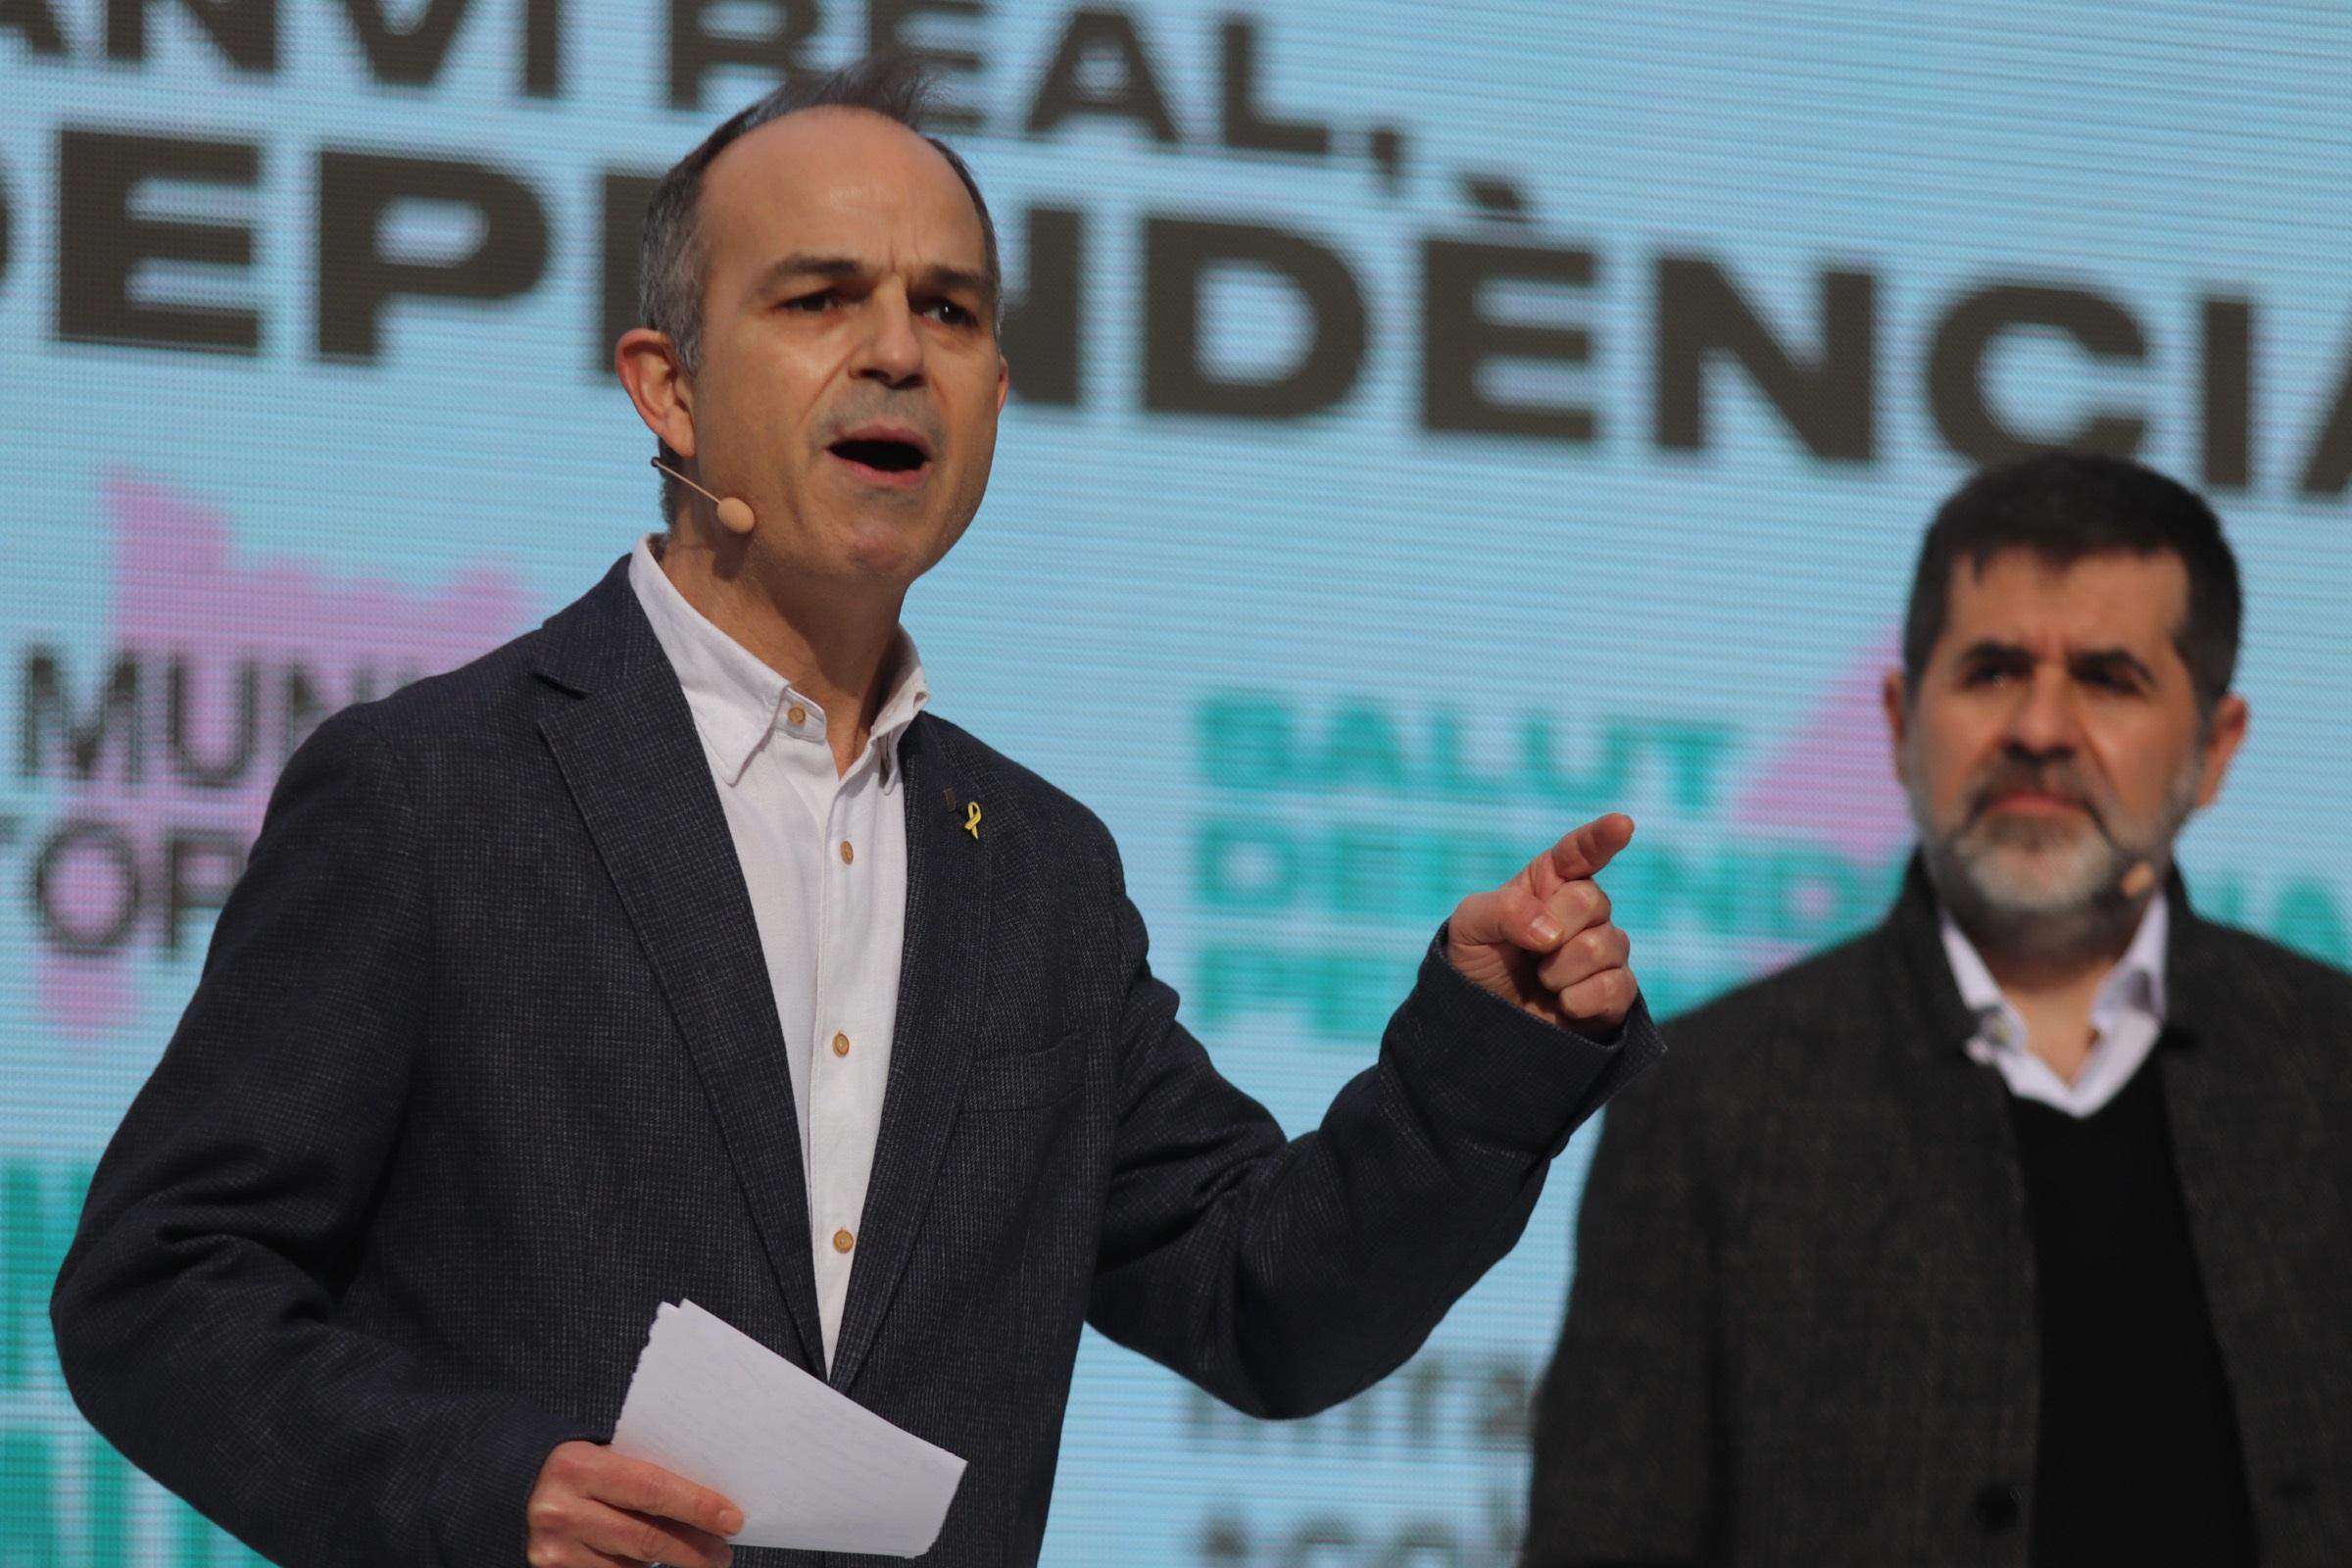 El exconseller catalán Jordi Turull y el secretario general de JxCat, Jordi Sánchez, durante un acto electoral / EUROPA PRESS